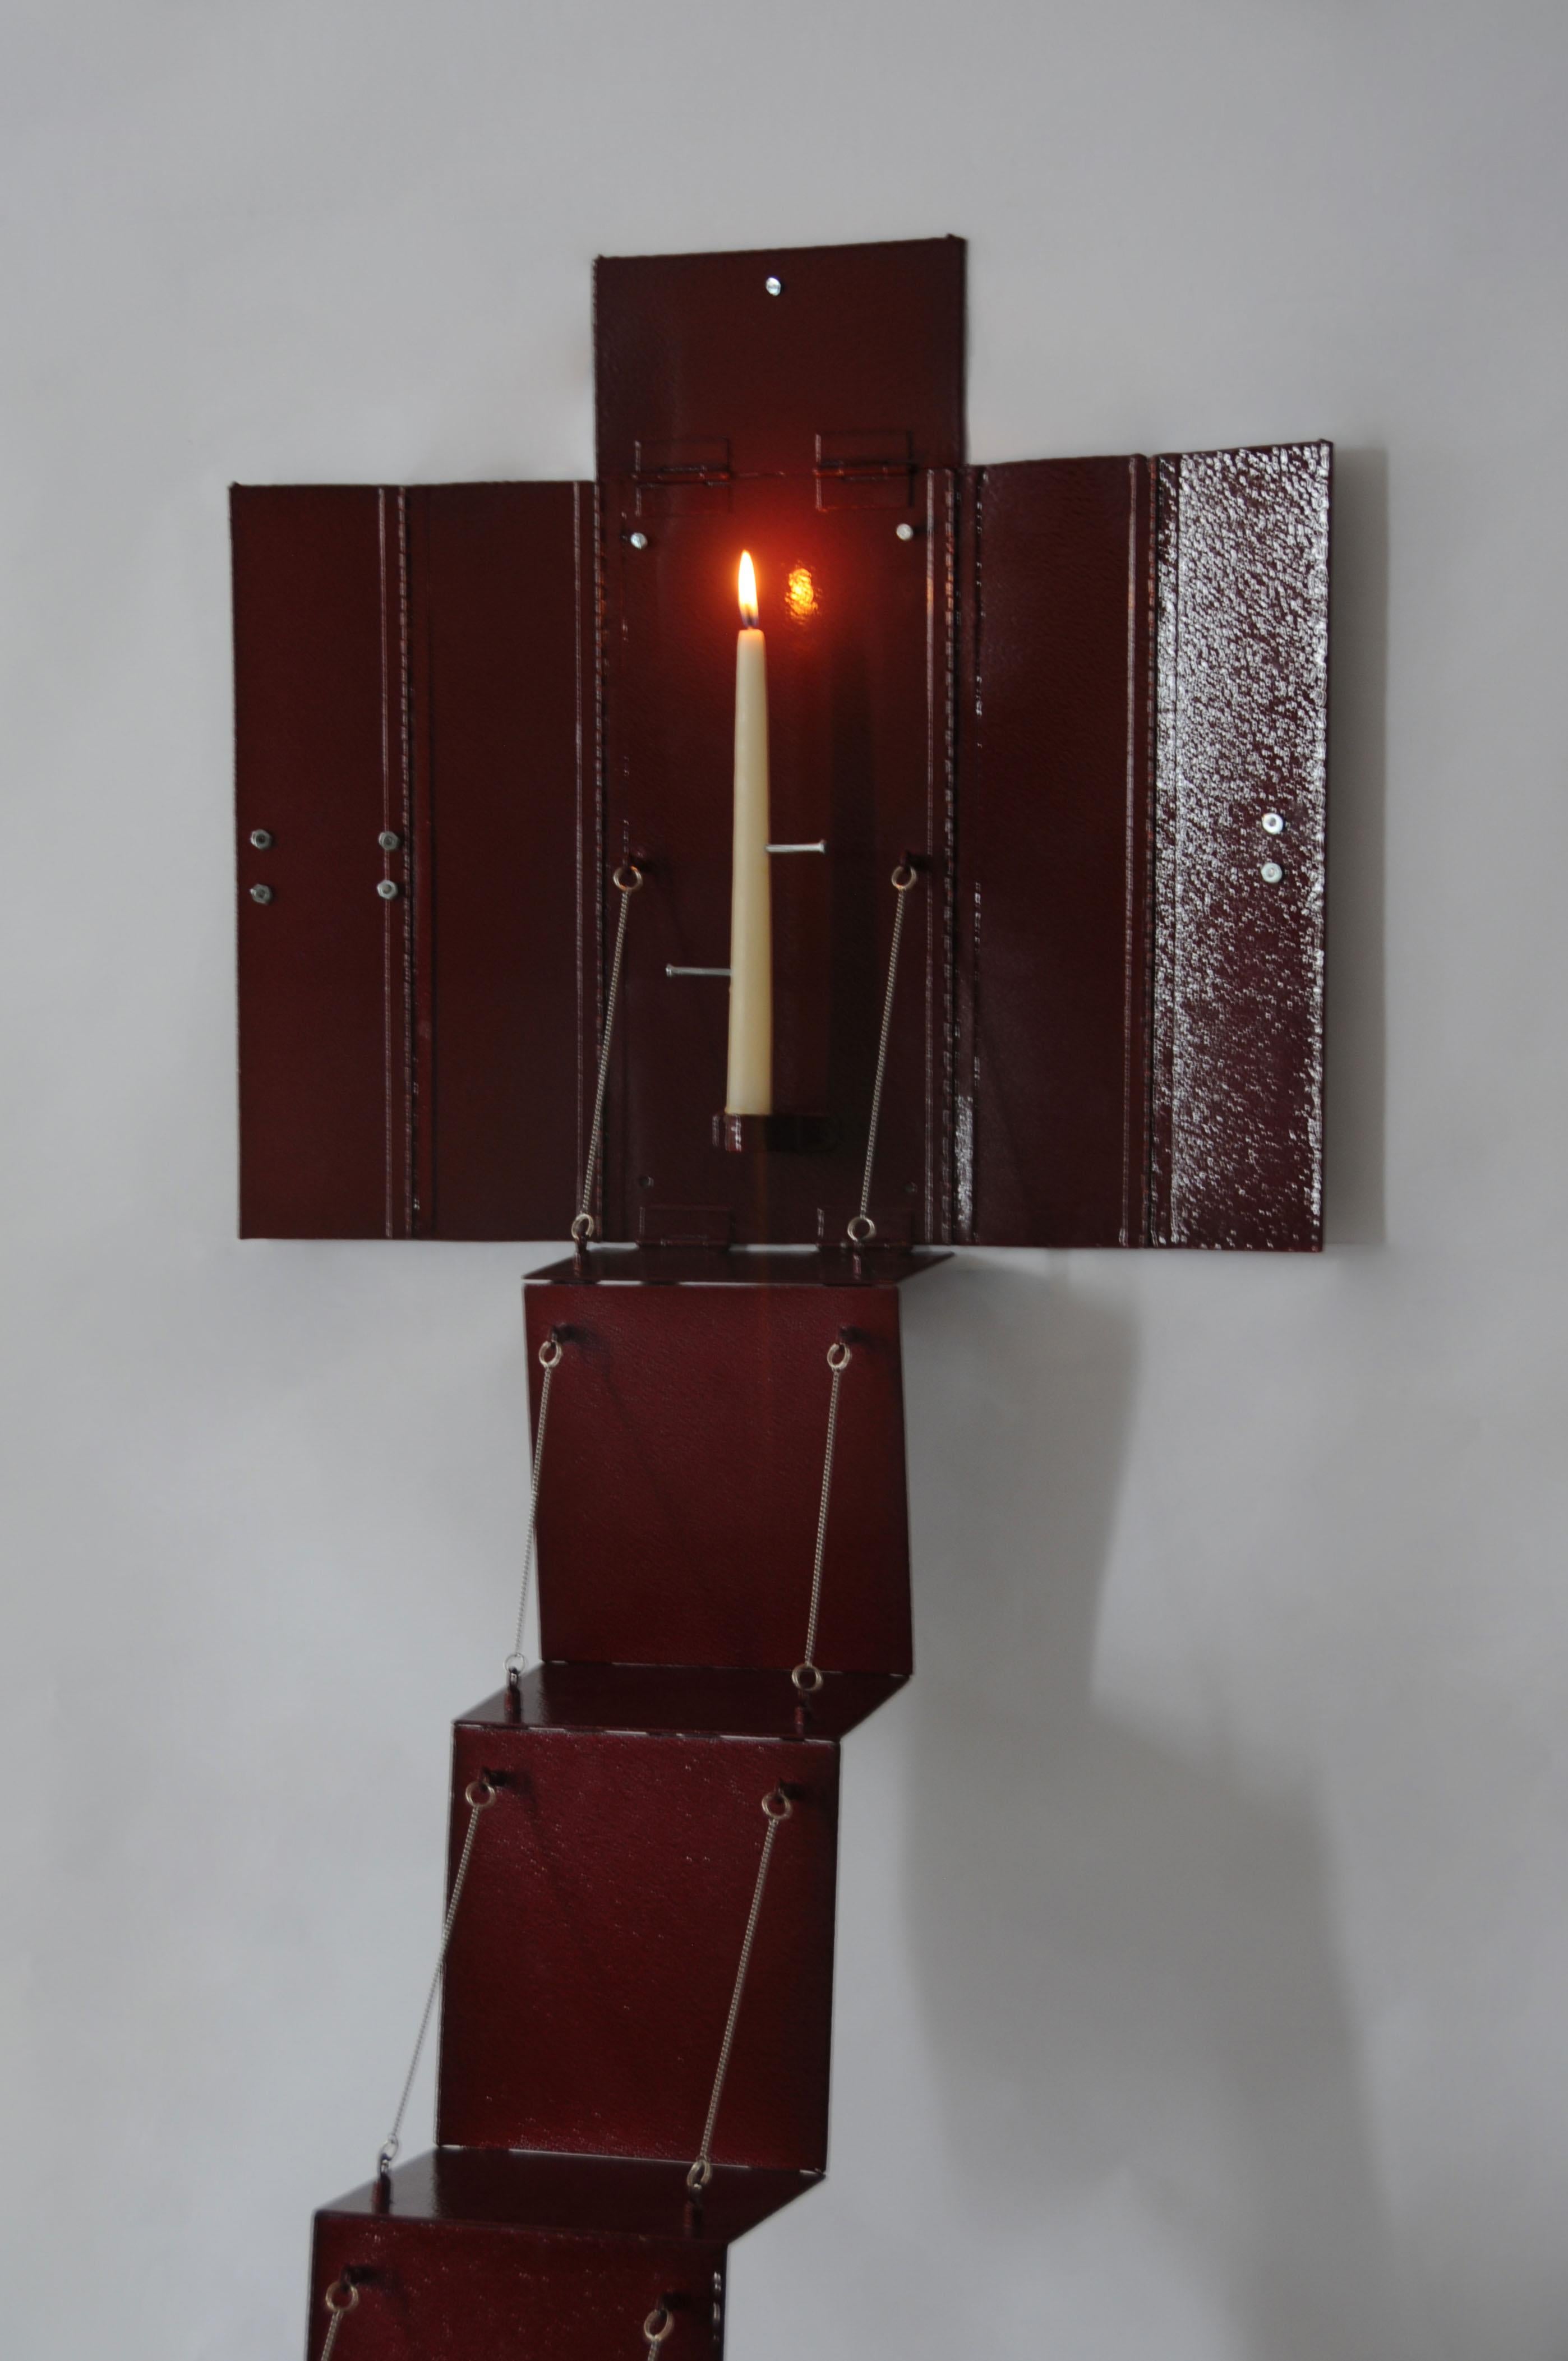 Ein Kerzenständer aus blutrotem Stahl ist als Altartafelbild an der Wand angebracht, das sich zusammenklappen lässt, um einen medizinischen Schrank zu simulieren. Die Kerze, die von der Metallstruktur getragen wird, wird von Nägeln in verschiedenen